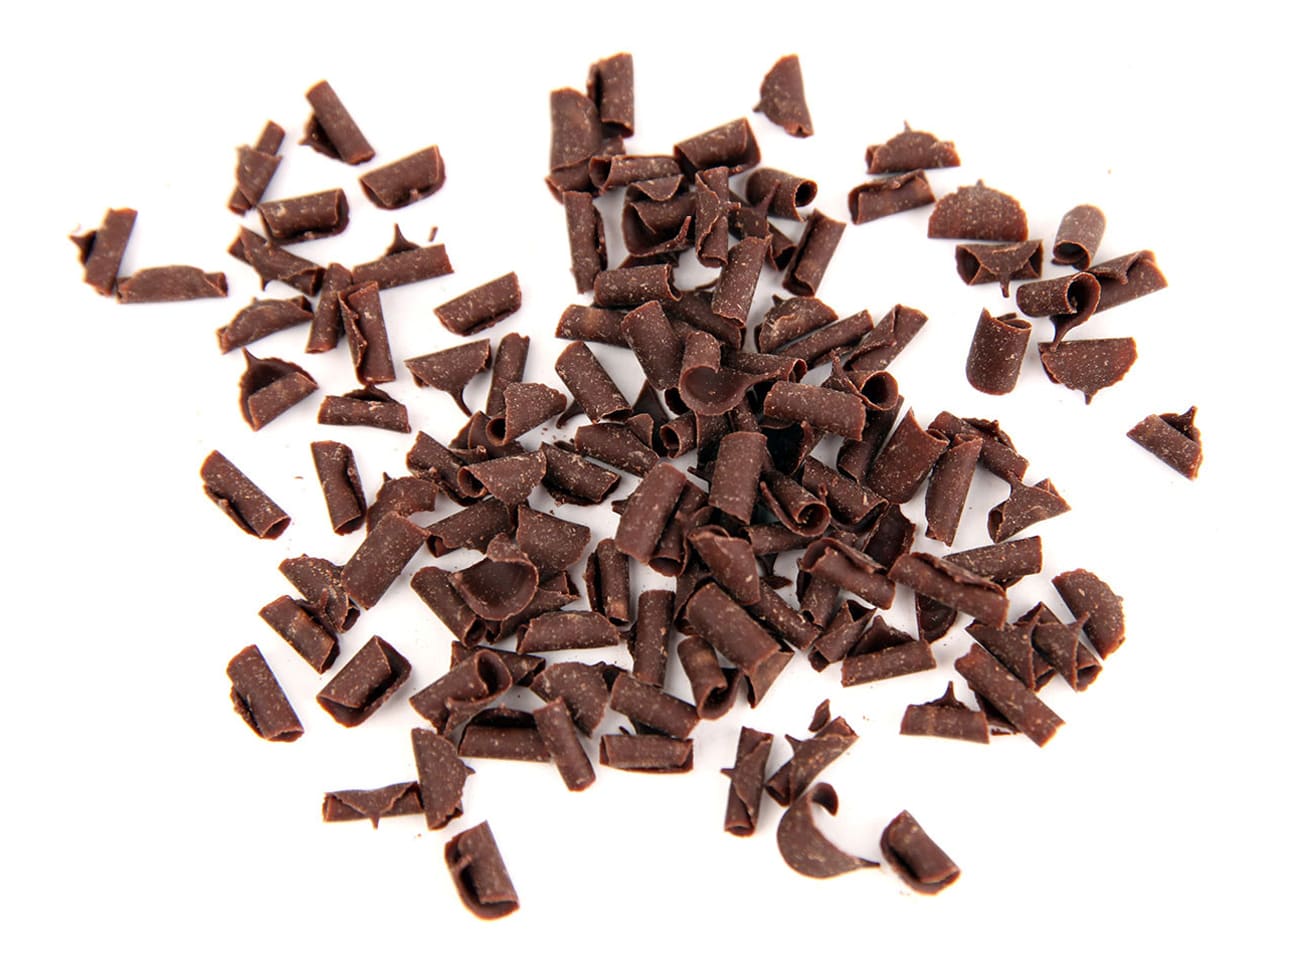 Copeaux de chocolat noir Mona Lisa1 kg - Decors en Chocolat | Cerf Dellier